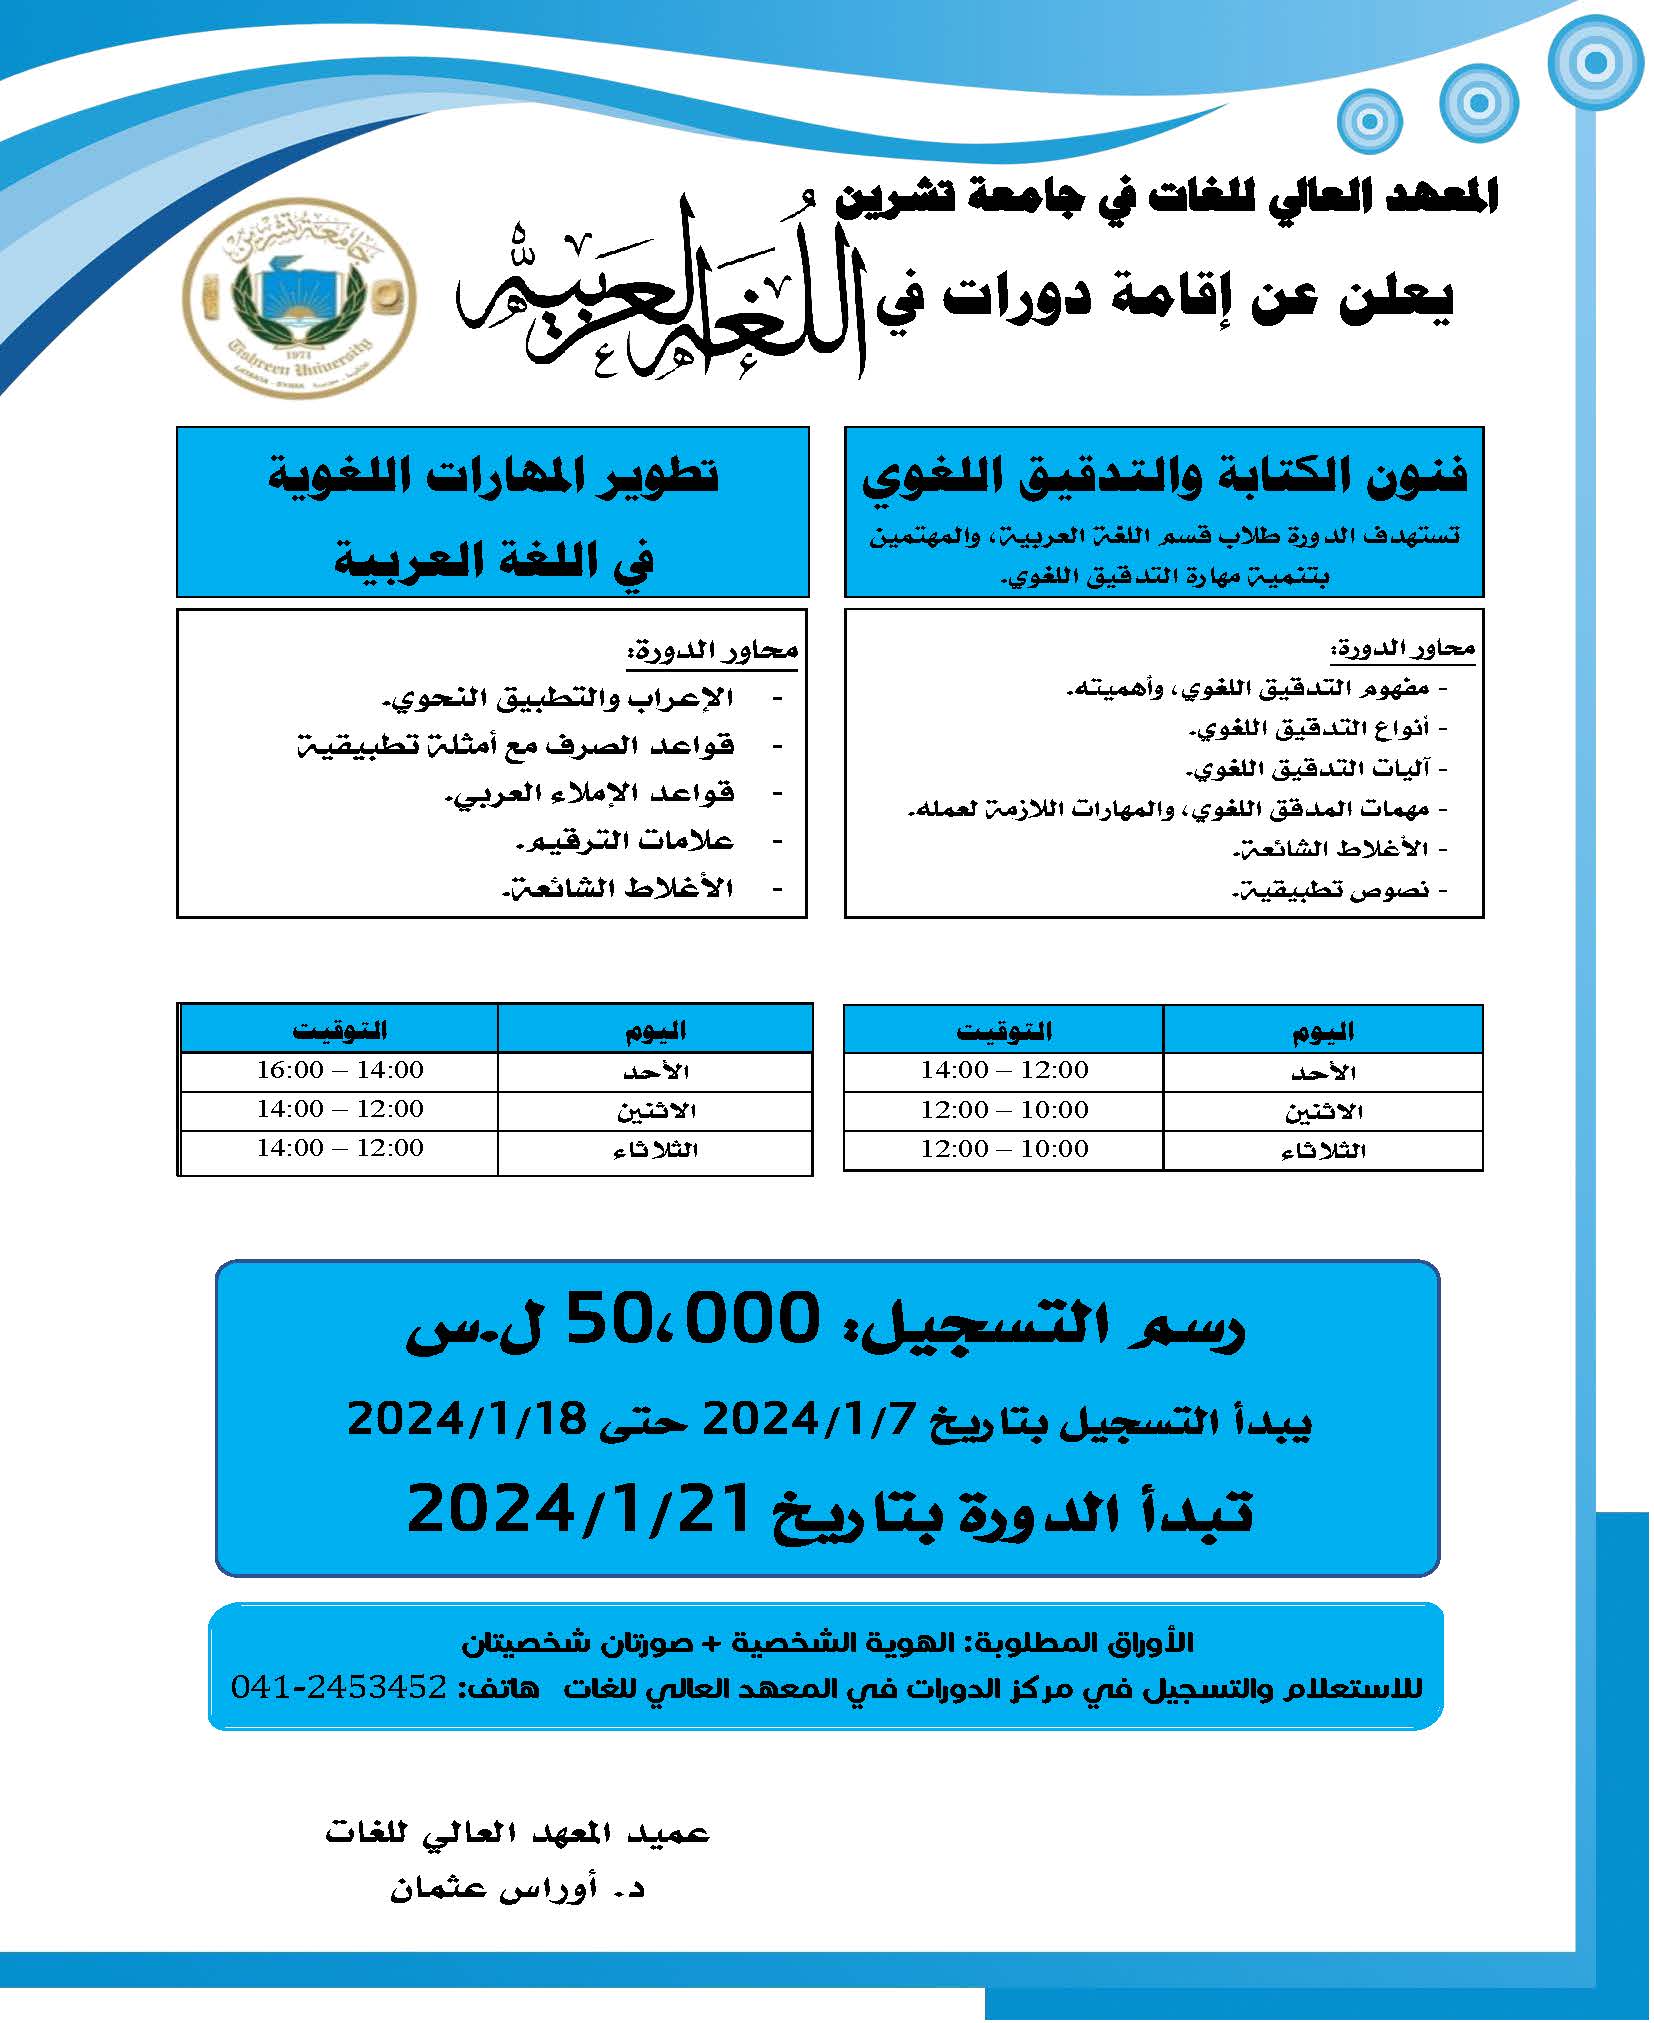 المعهد العالي للغات يعلن إقامة دورات في اللغة العربية تبدء بتاريخ 21-1-2024